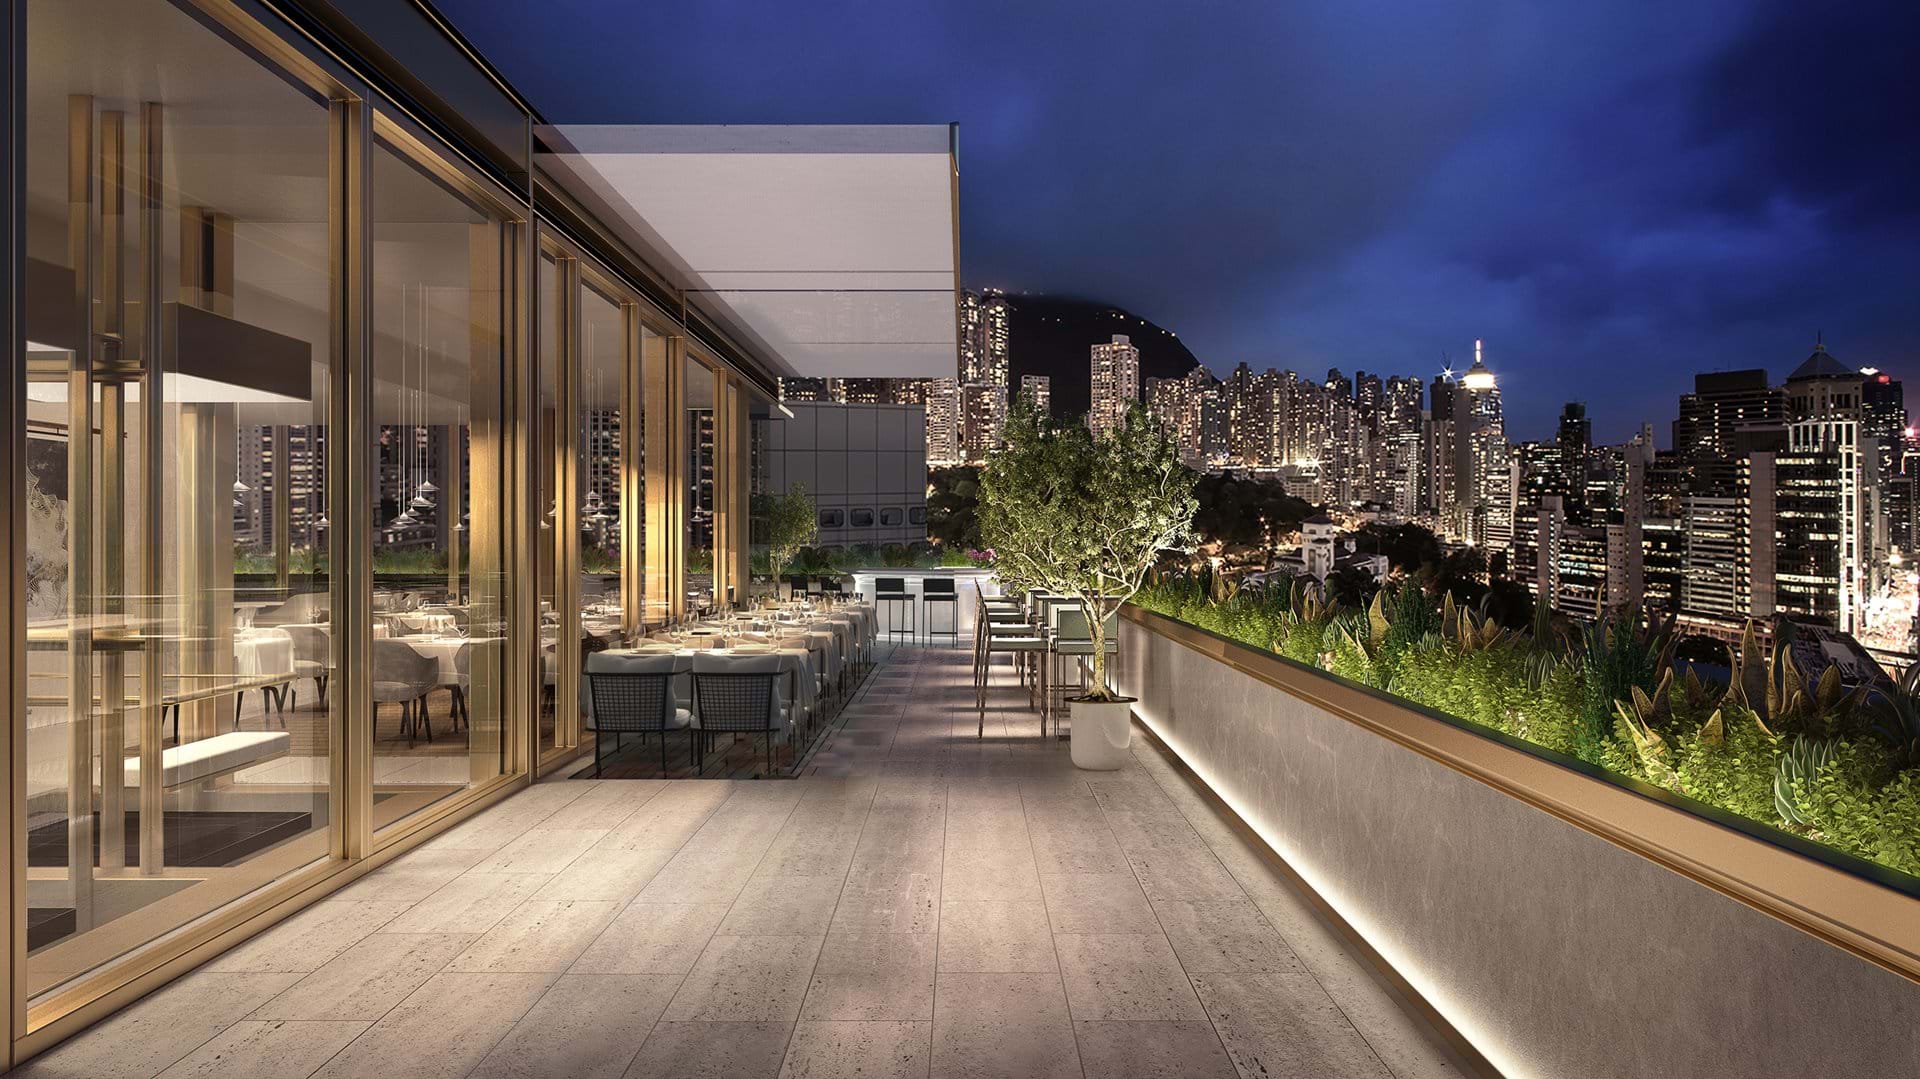 Foster+Partners transforma el 'Murray Building' en lujoso hotel 5 estrellas